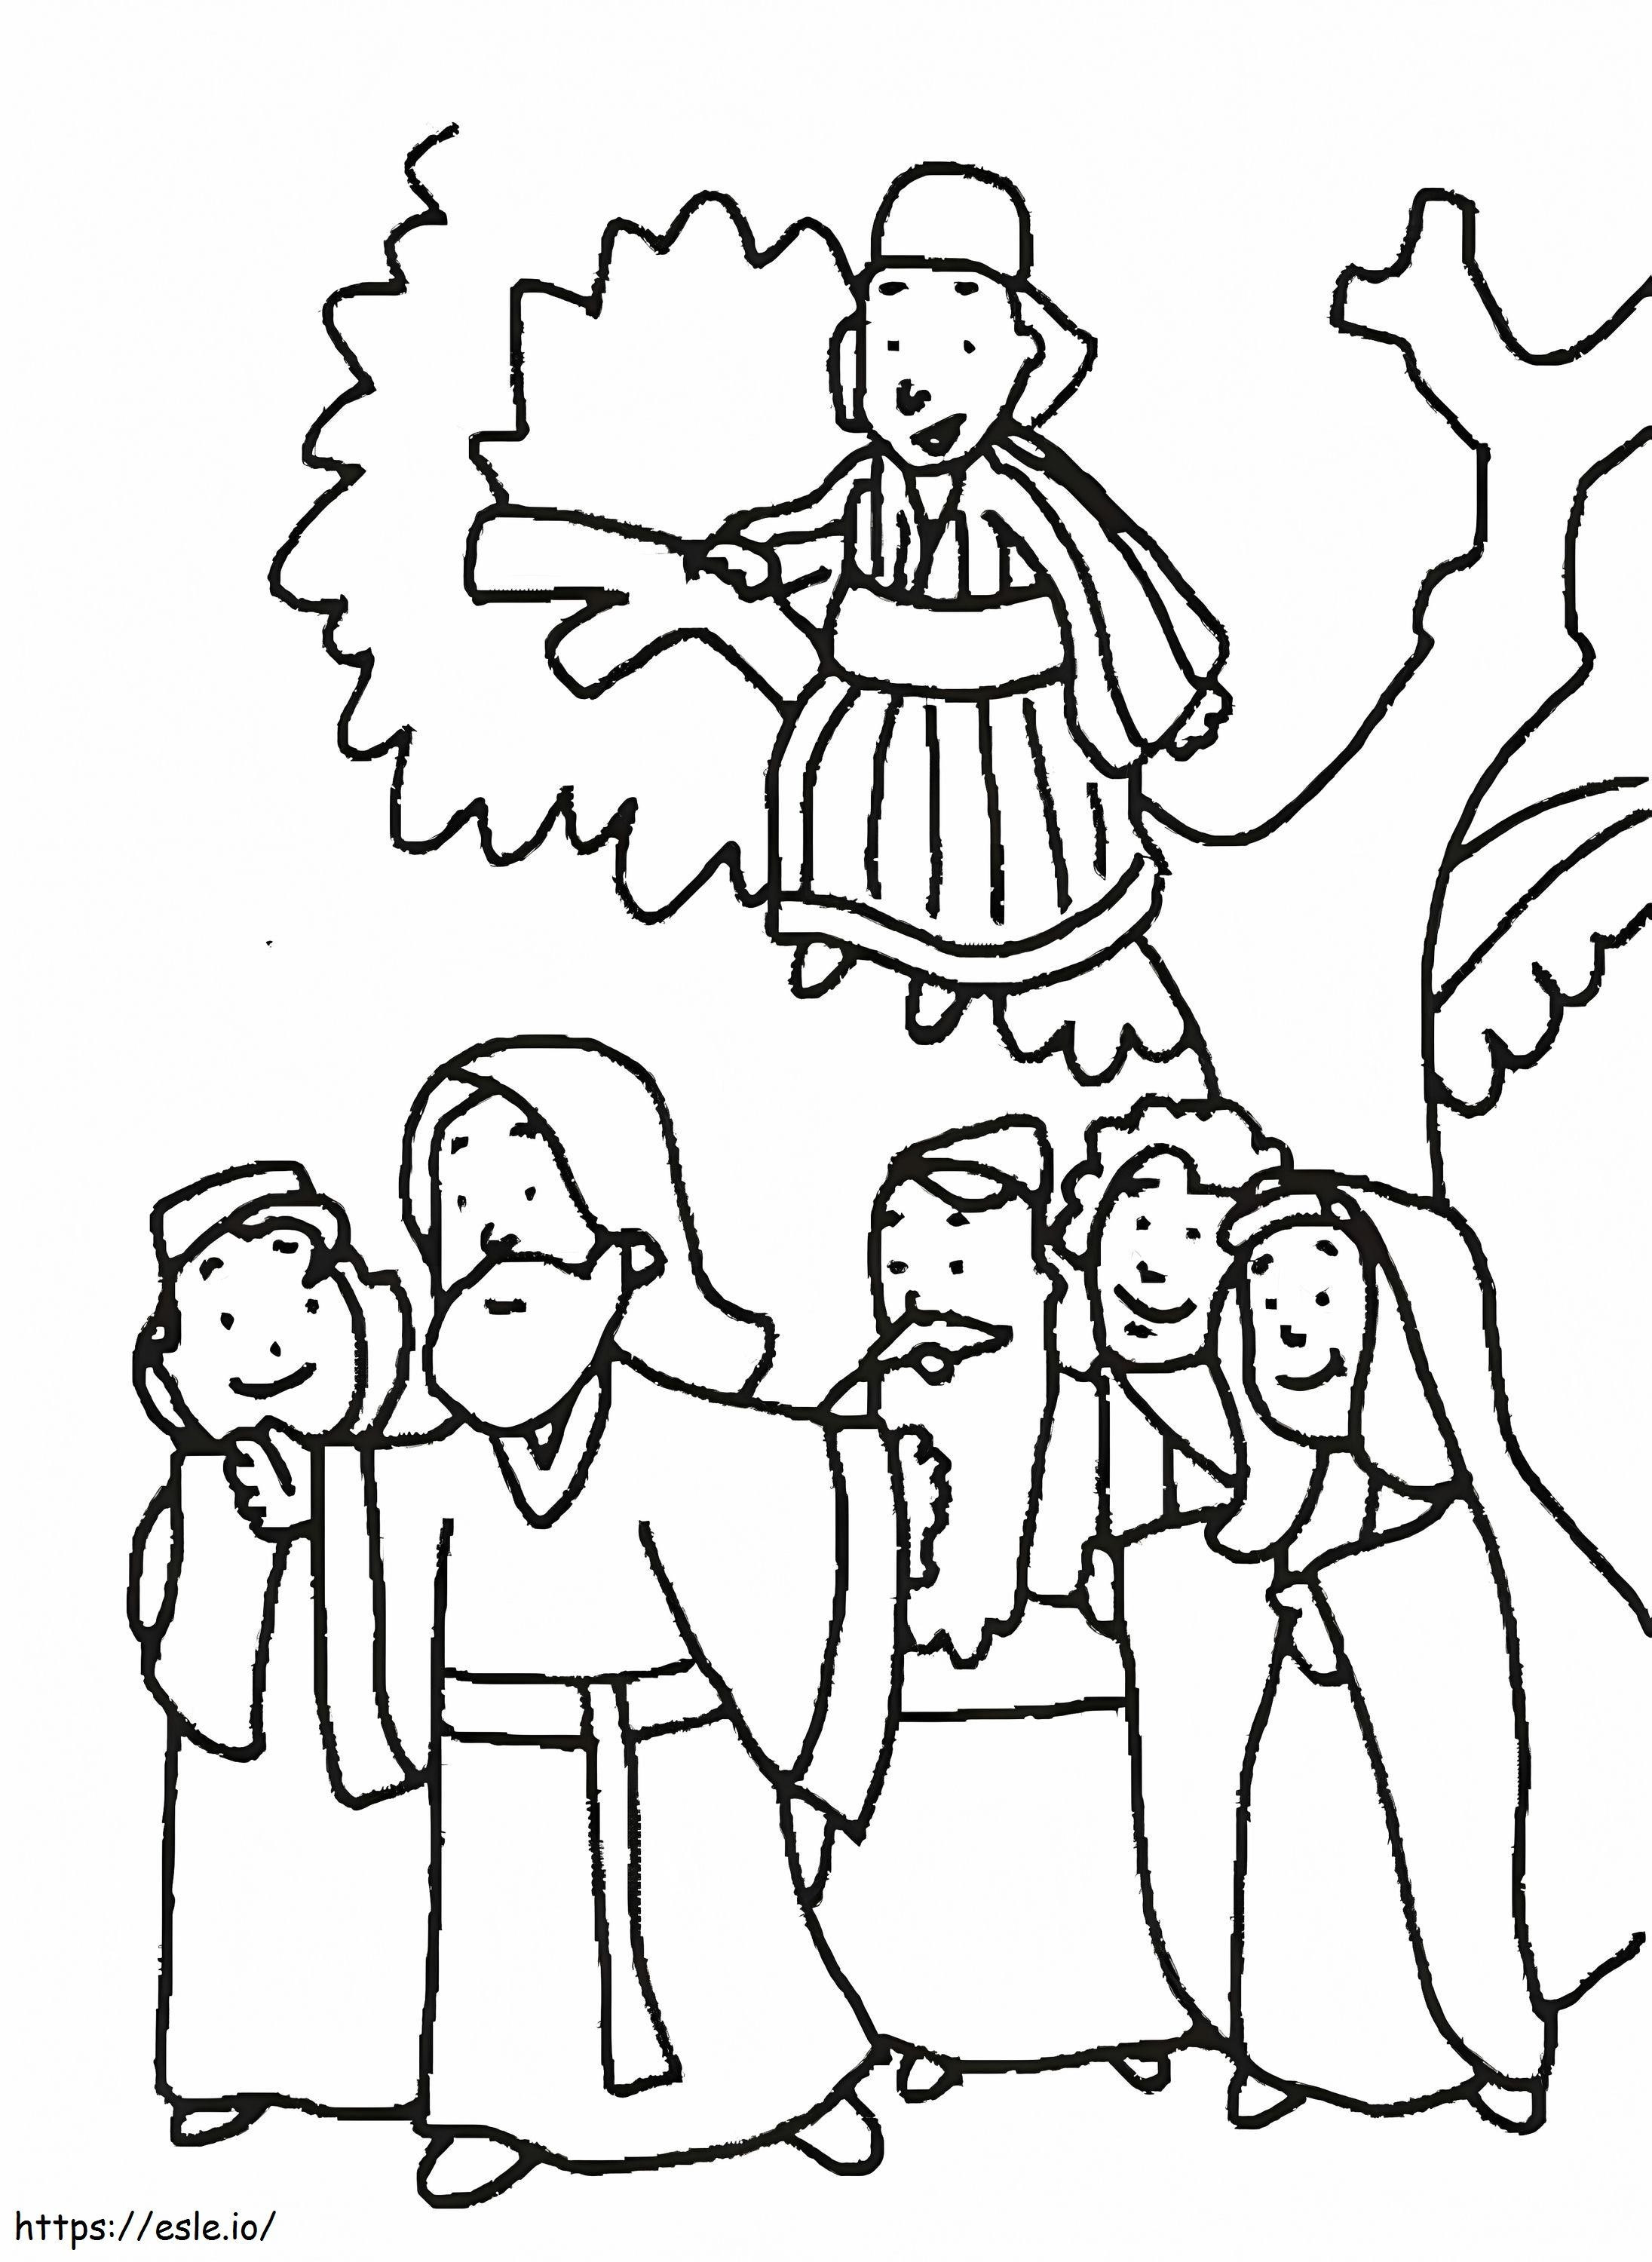 Ağaçta Zakkay ve İsa'nın Çizimi boyama